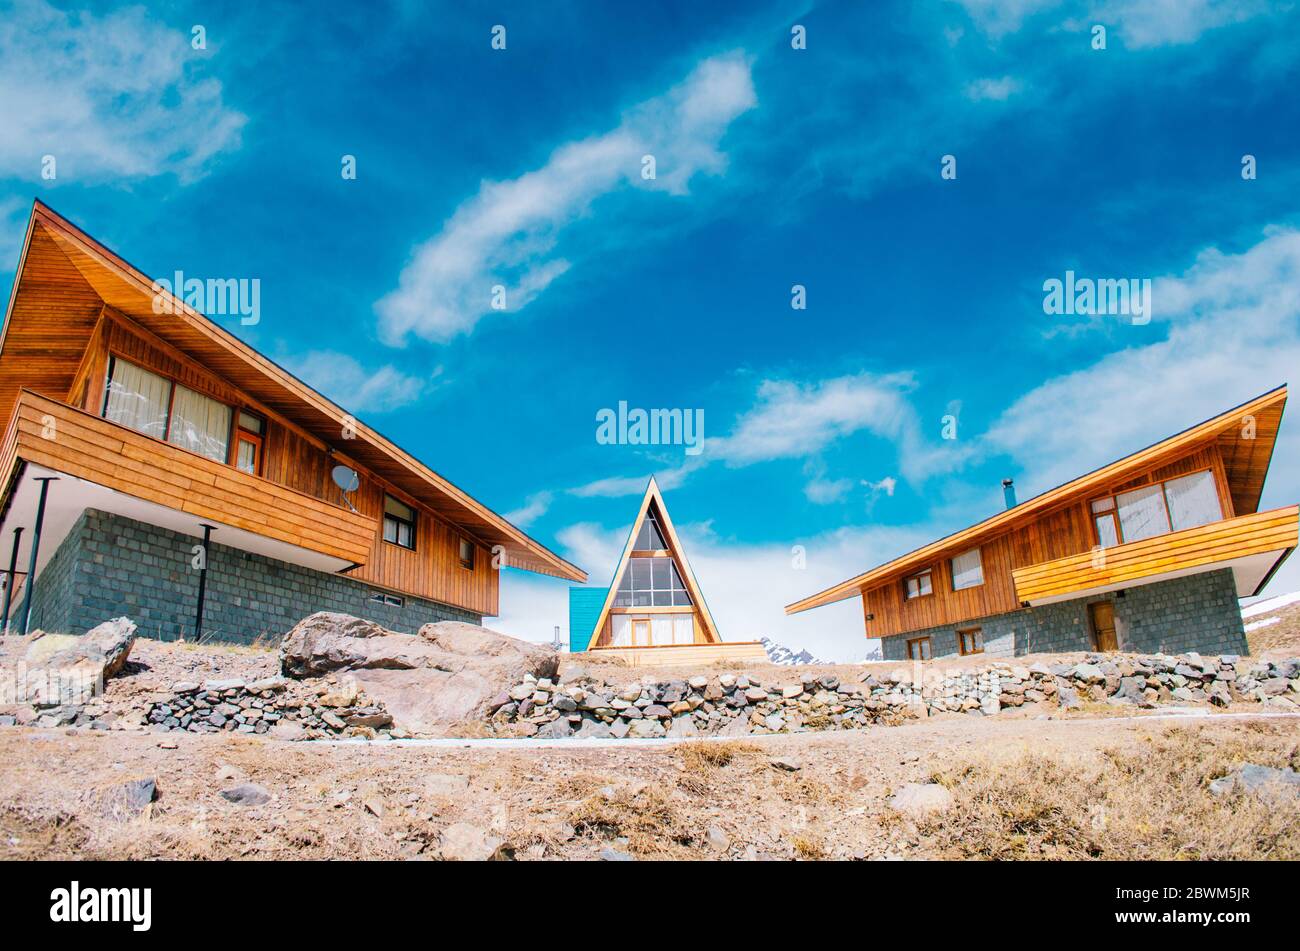 Ein kleiner dreieckiger Bungalow neben zwei anderen Holzhütten in der Nebensaison in den Anden. Stockfoto